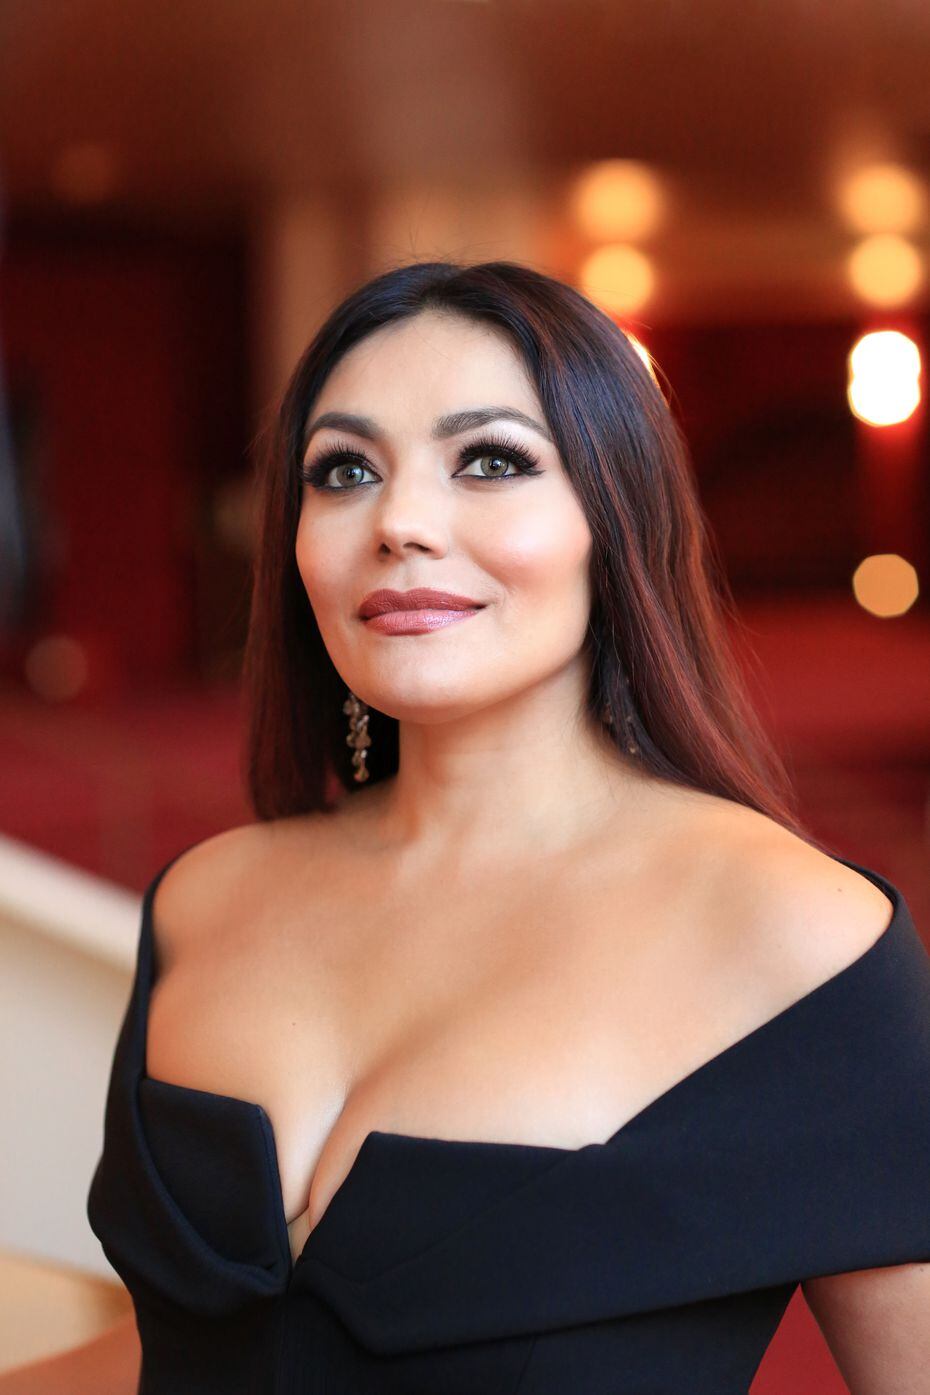 La soprano Ailyn Pérez, hija de inmigrantes mexicanos, acompañará a los músicos en el Centro...